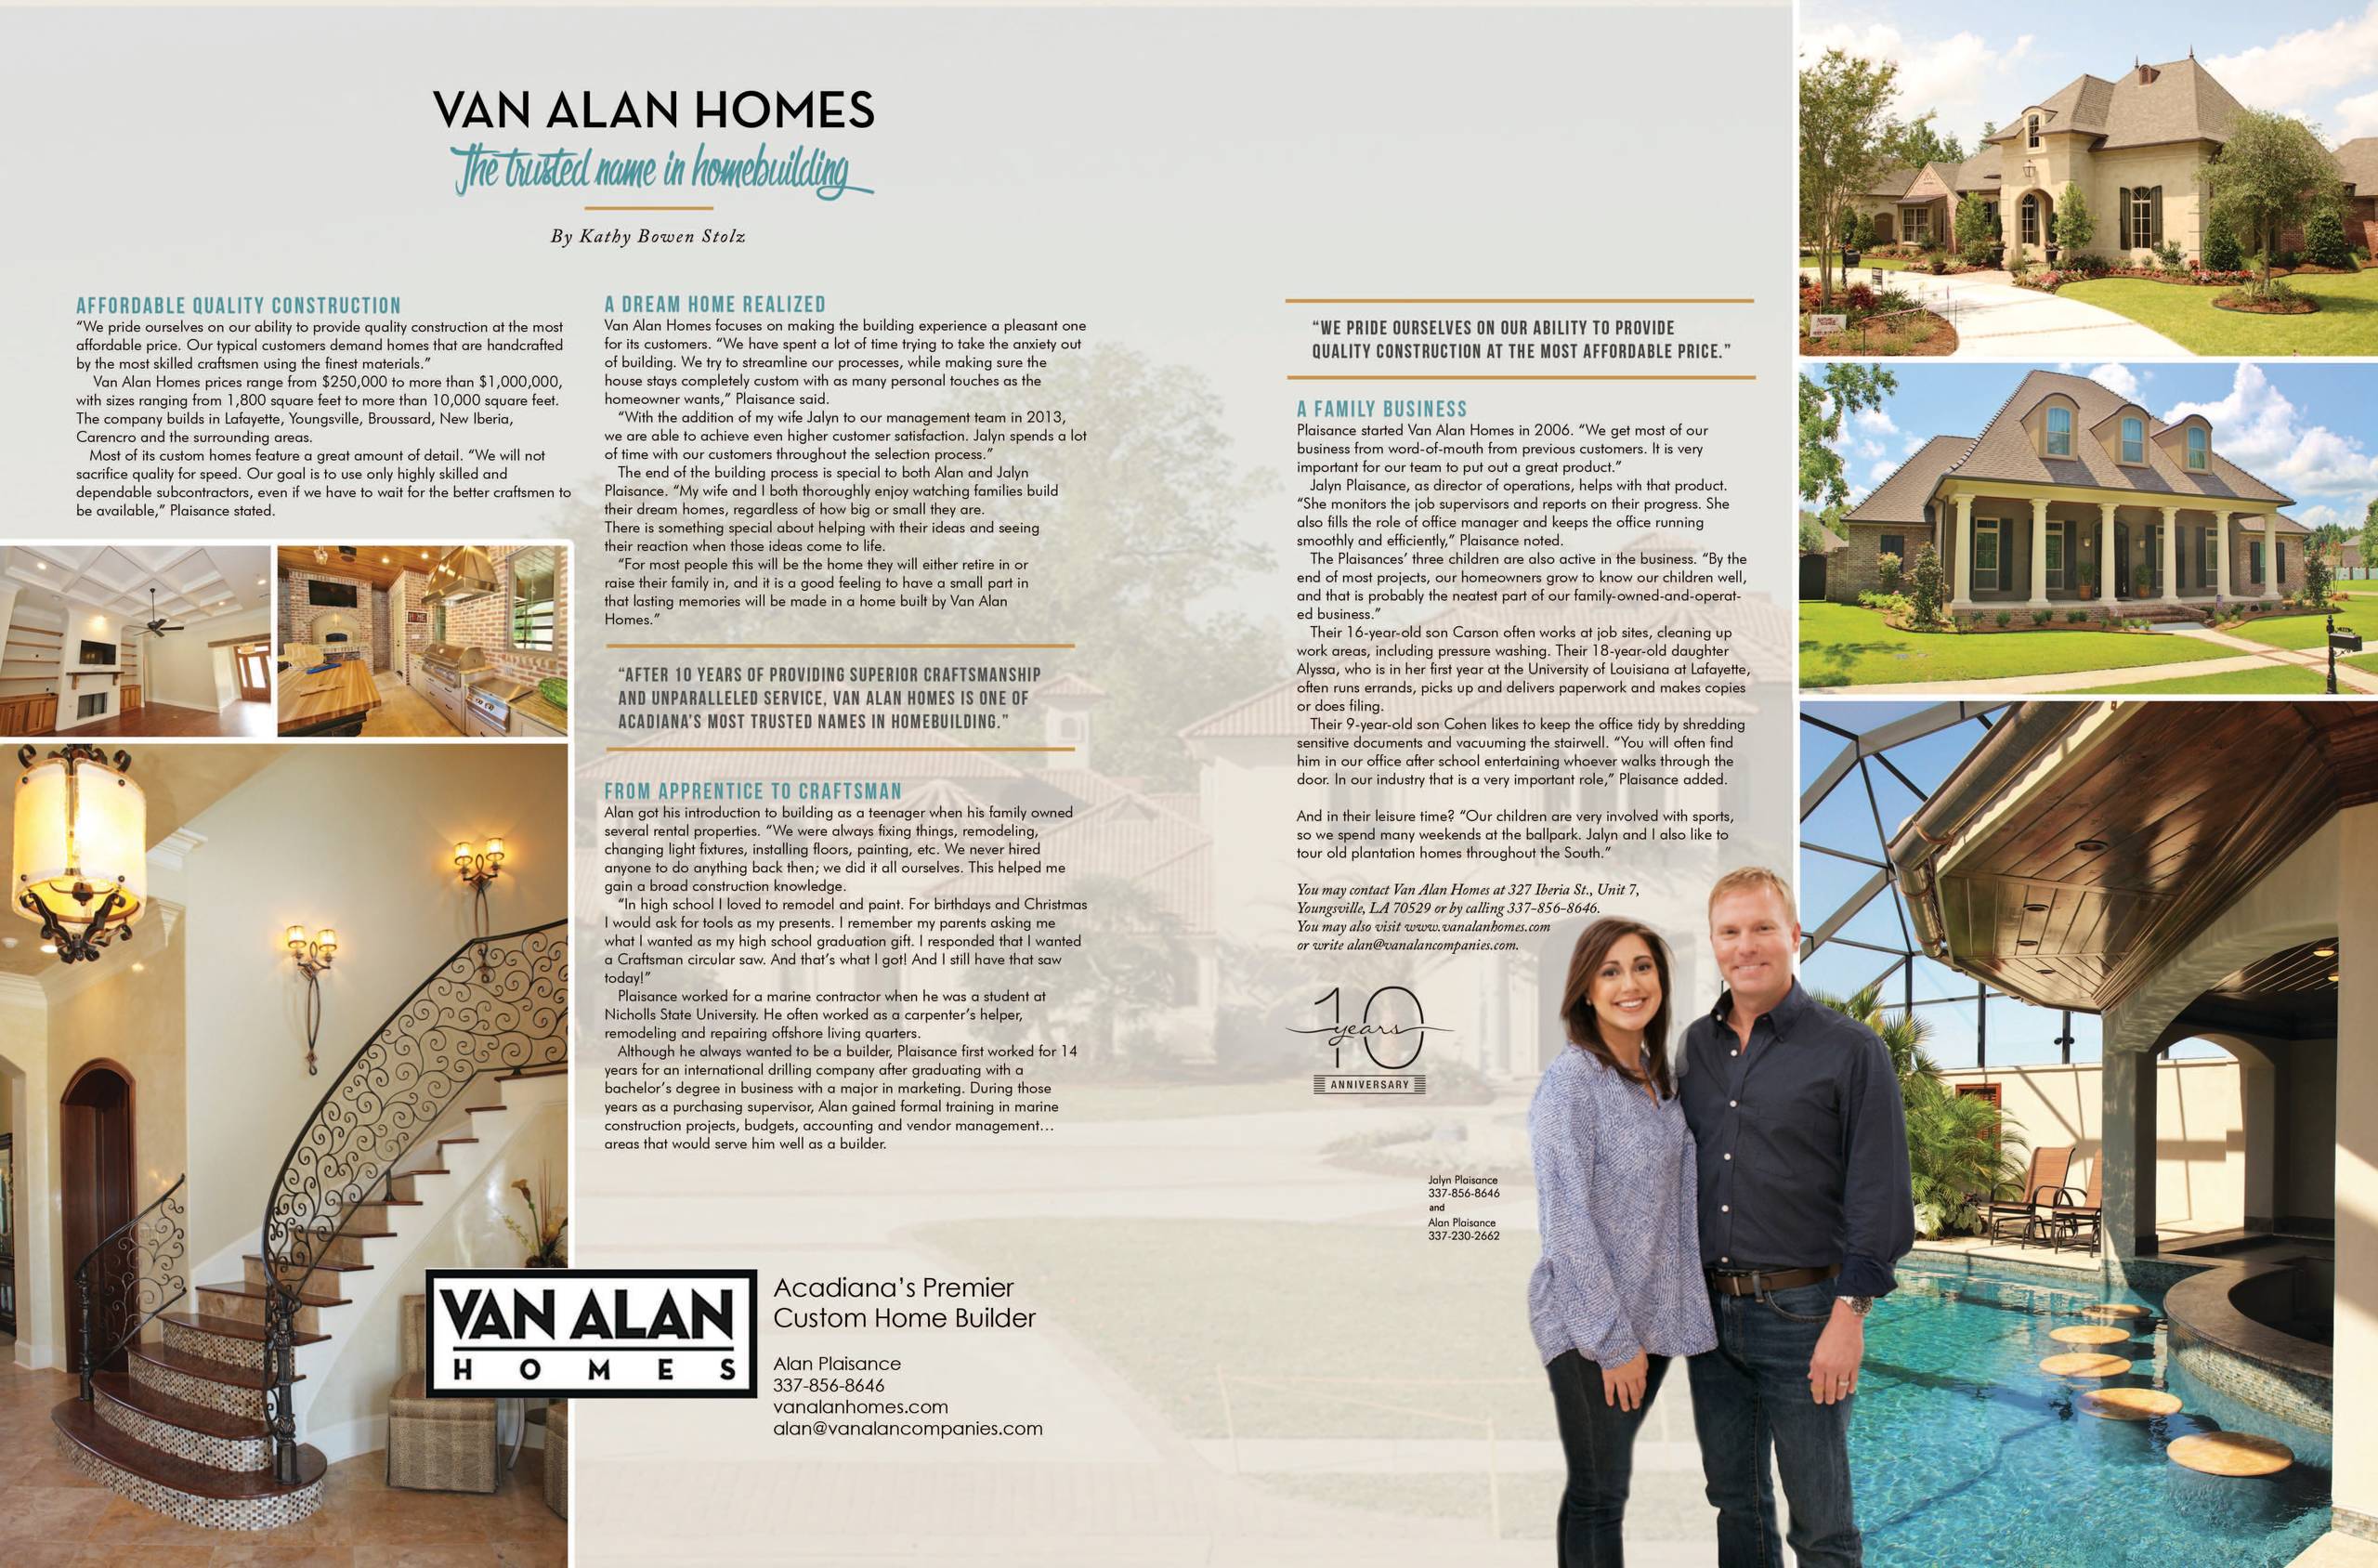 The People of Van Alan Homes